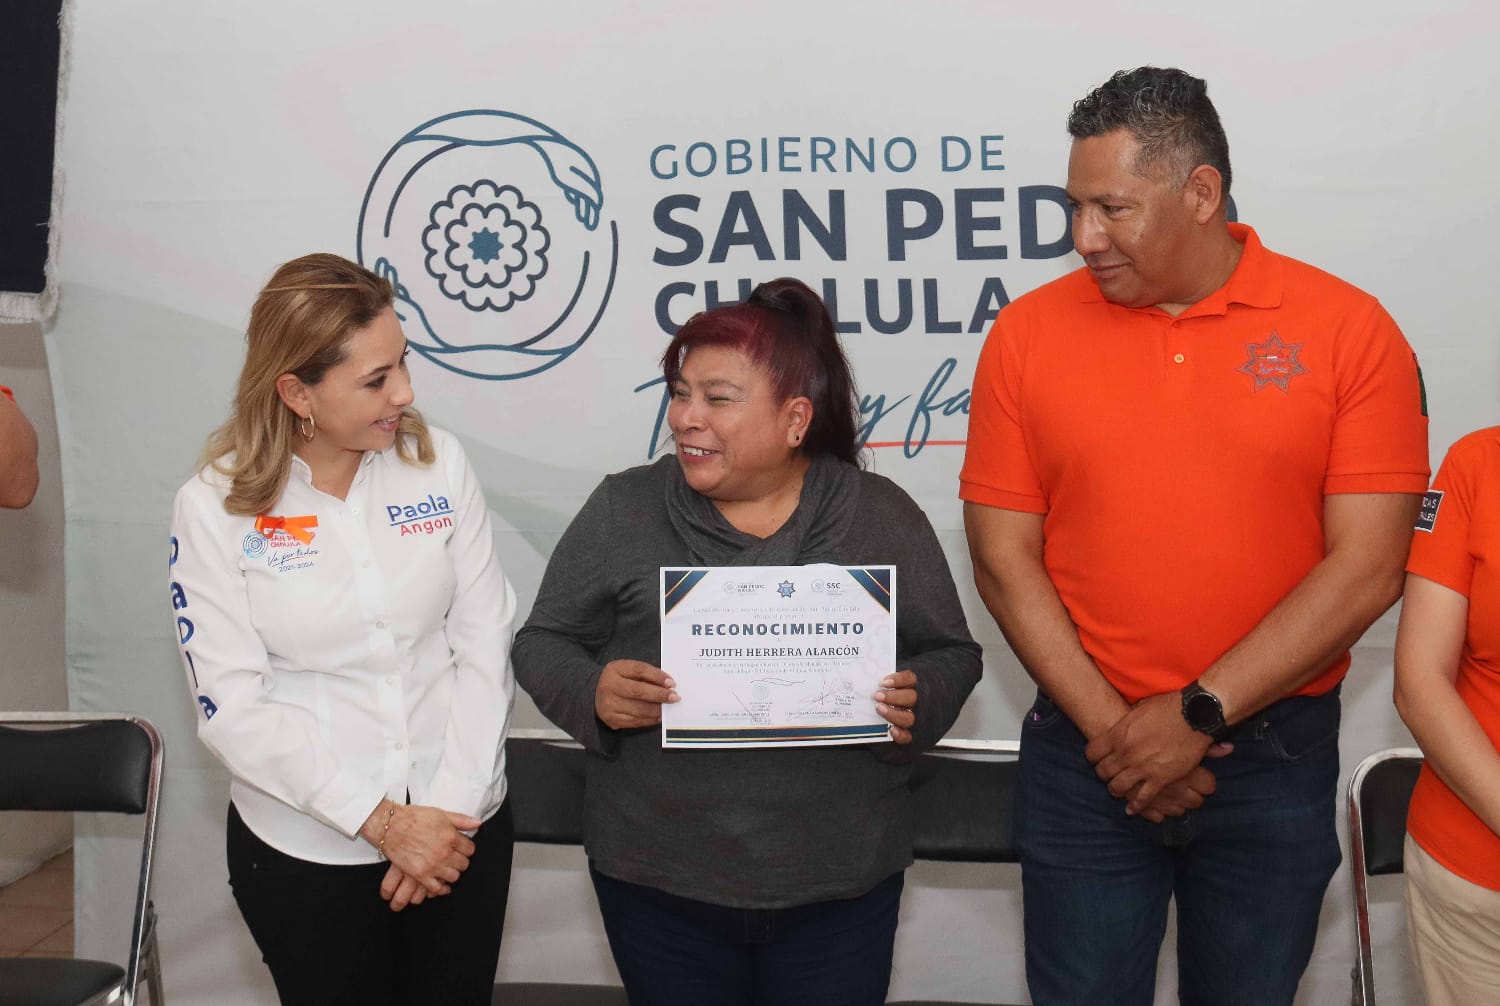 En San Pedro Cholula, Paola Angon facilita cursos gratuitos de manejo a mujeres